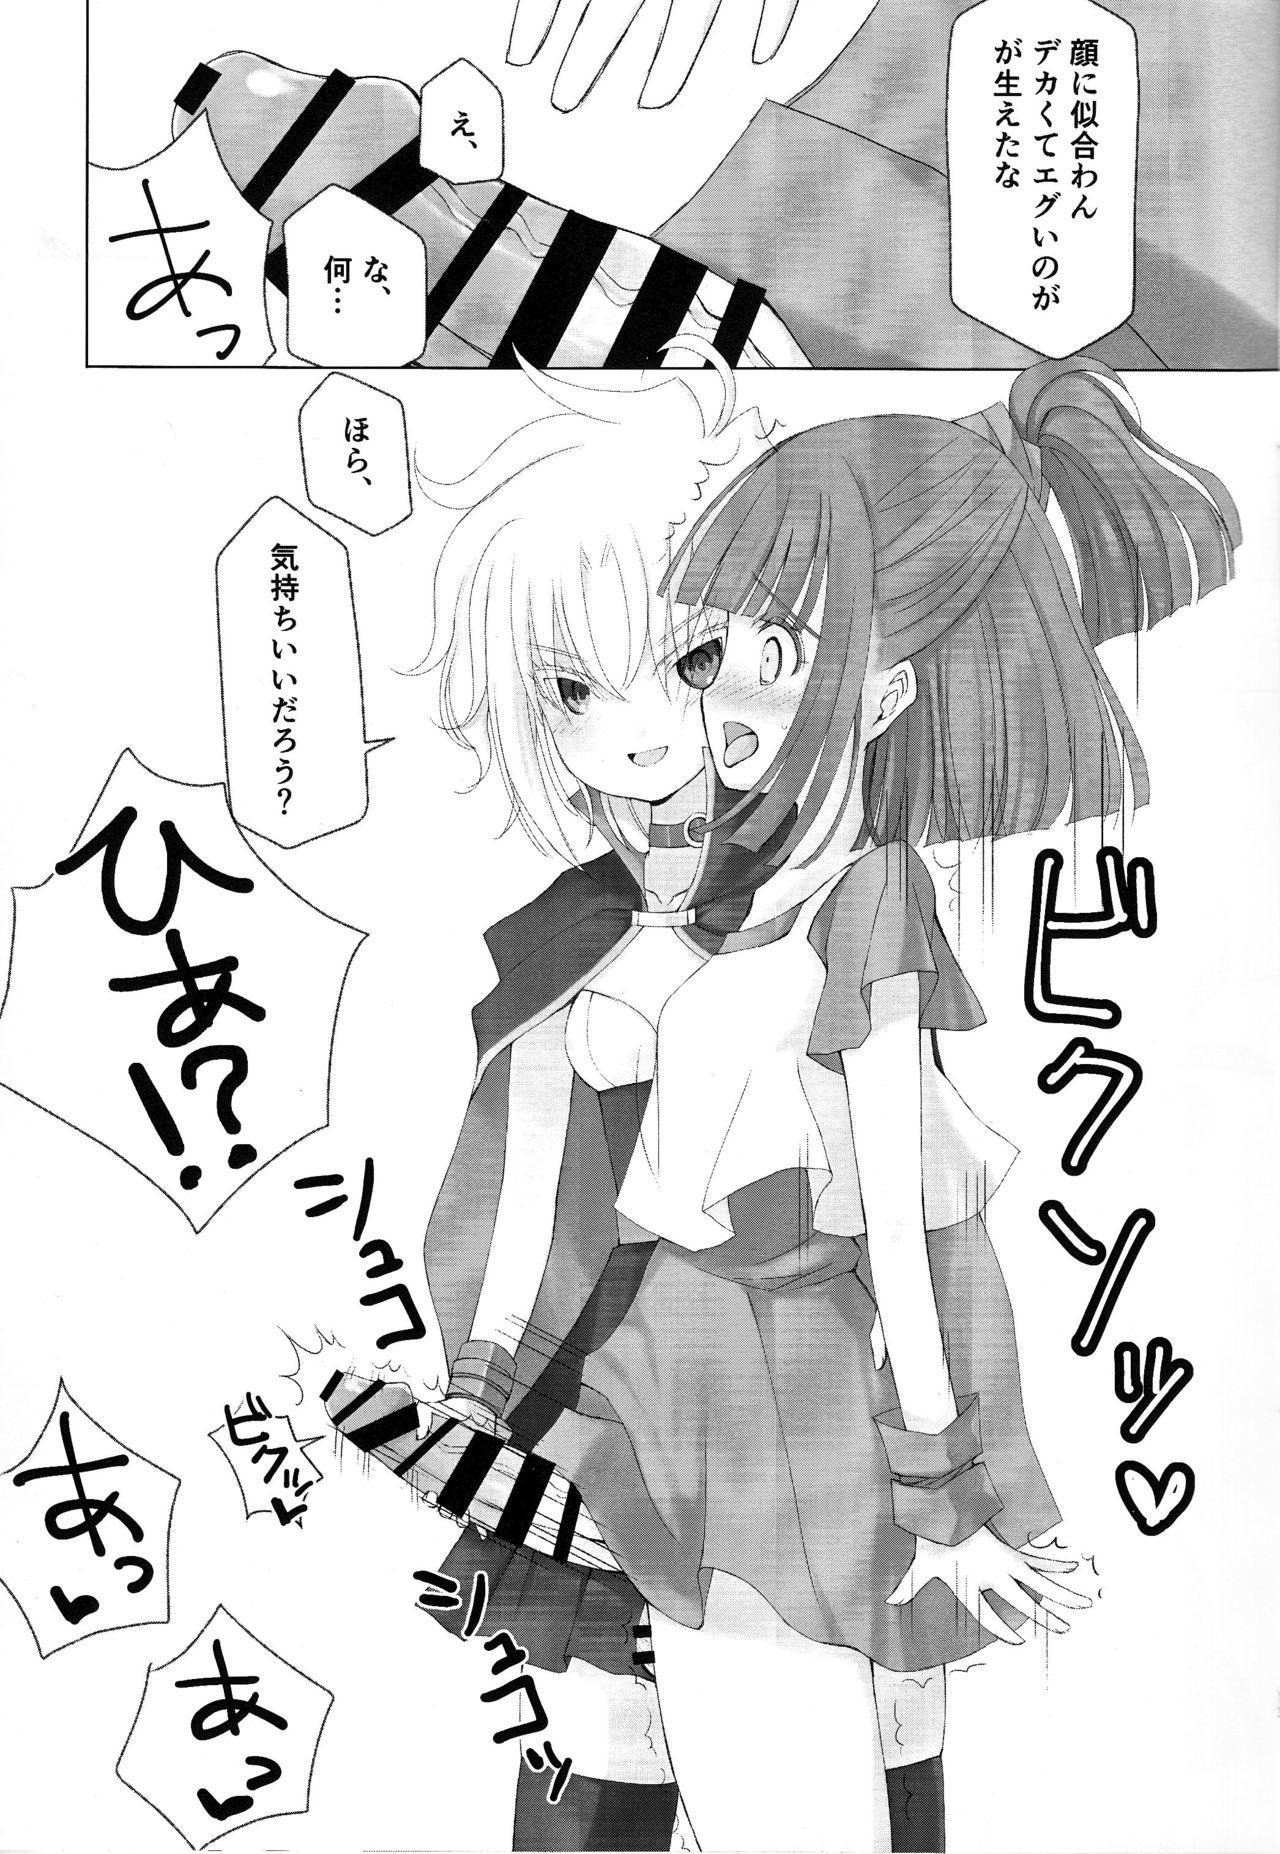 Teenager [Fuel Meter (Micchi O) Boku to Onaji Kurai no Ko ni Nacchatta Toki no Hanashi (Puyo Puyo) - Puyo puyo Nuru - Page 12